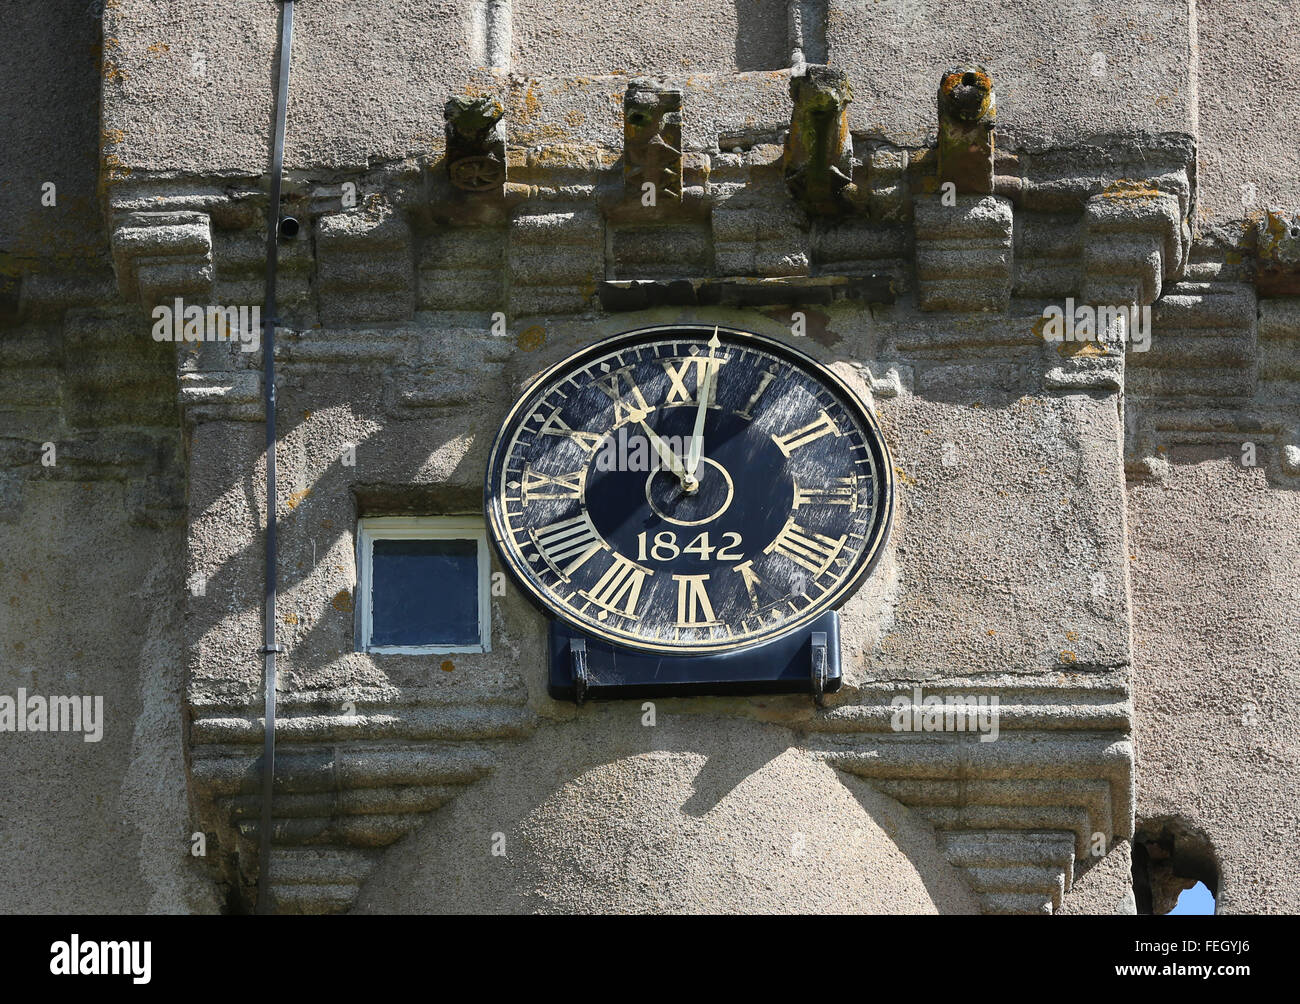 Vieille horloge datée 1842 sur le Château de Crathes Aberdeenshire, Scotland, UK, w Banque D'Images